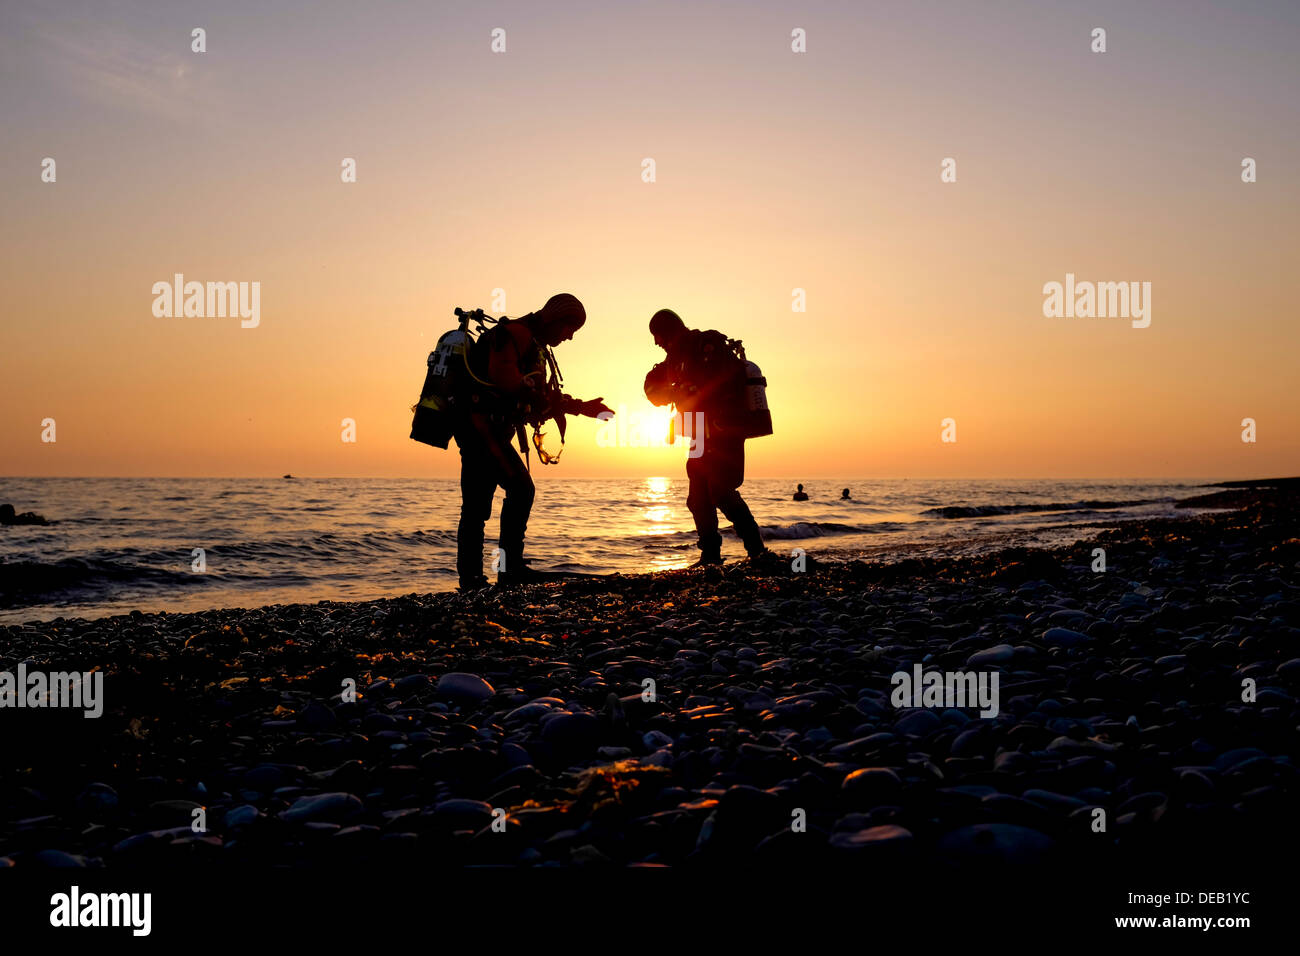 Deux hommes en silhouette, la plongée au coucher du soleil, la baie de Cardigan, Wales Aberystwyth UK Banque D'Images